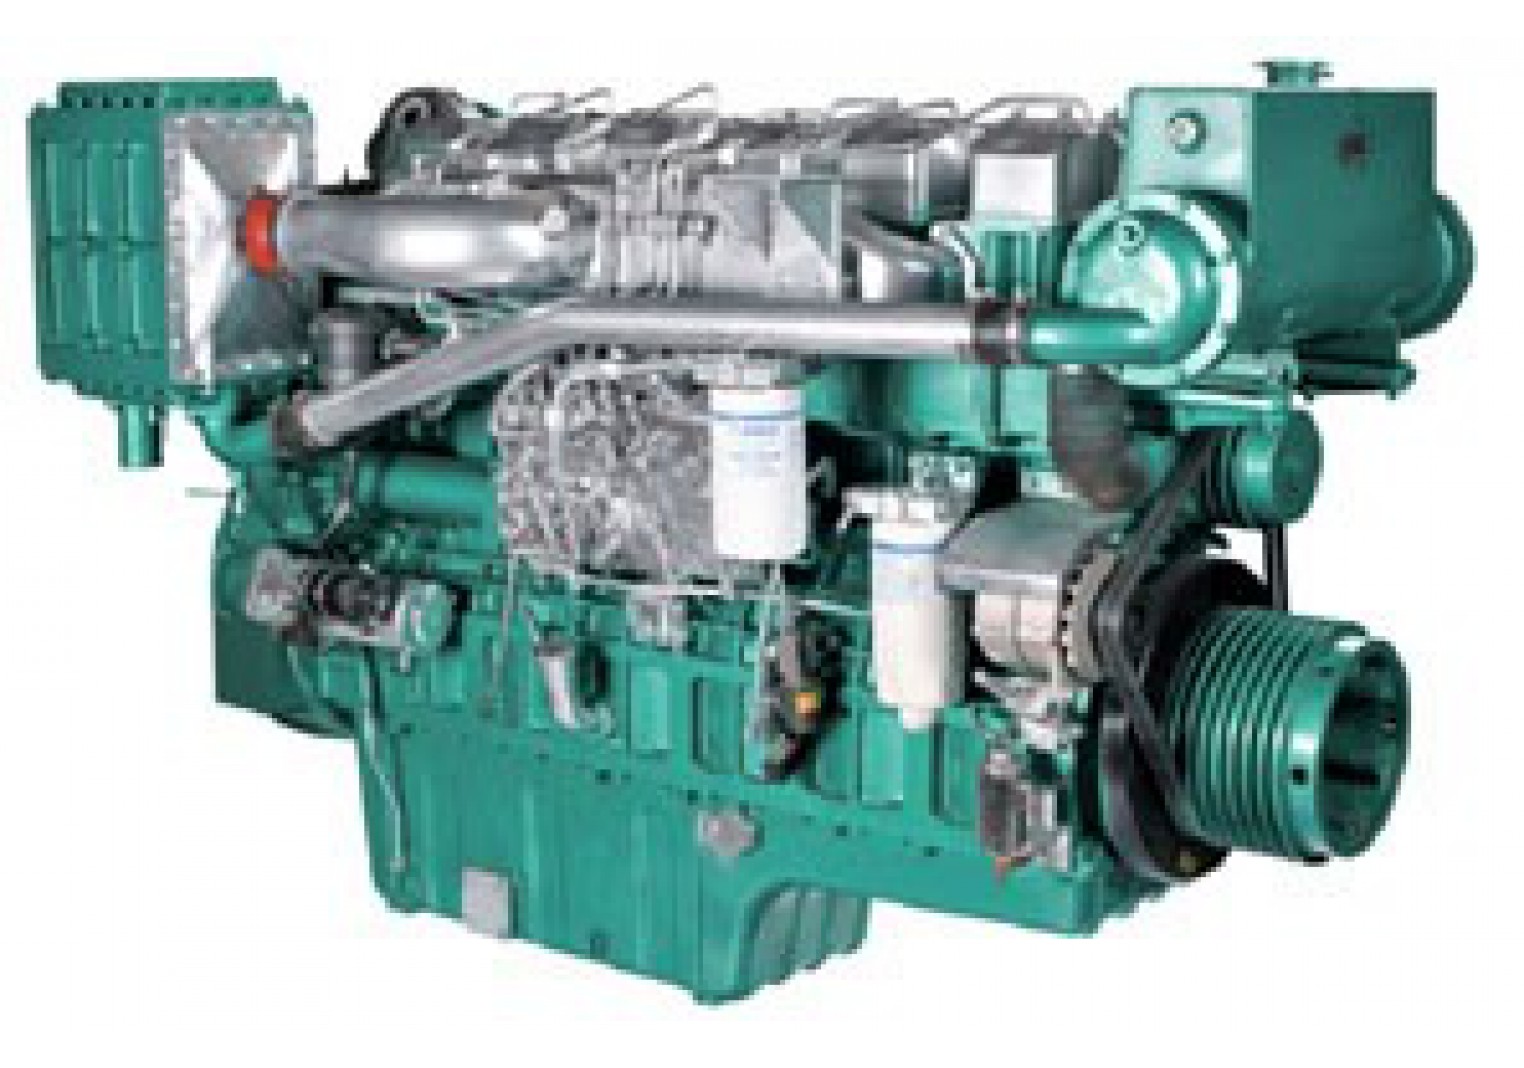 Yuchai Marine Diesel Engine YC6T490C